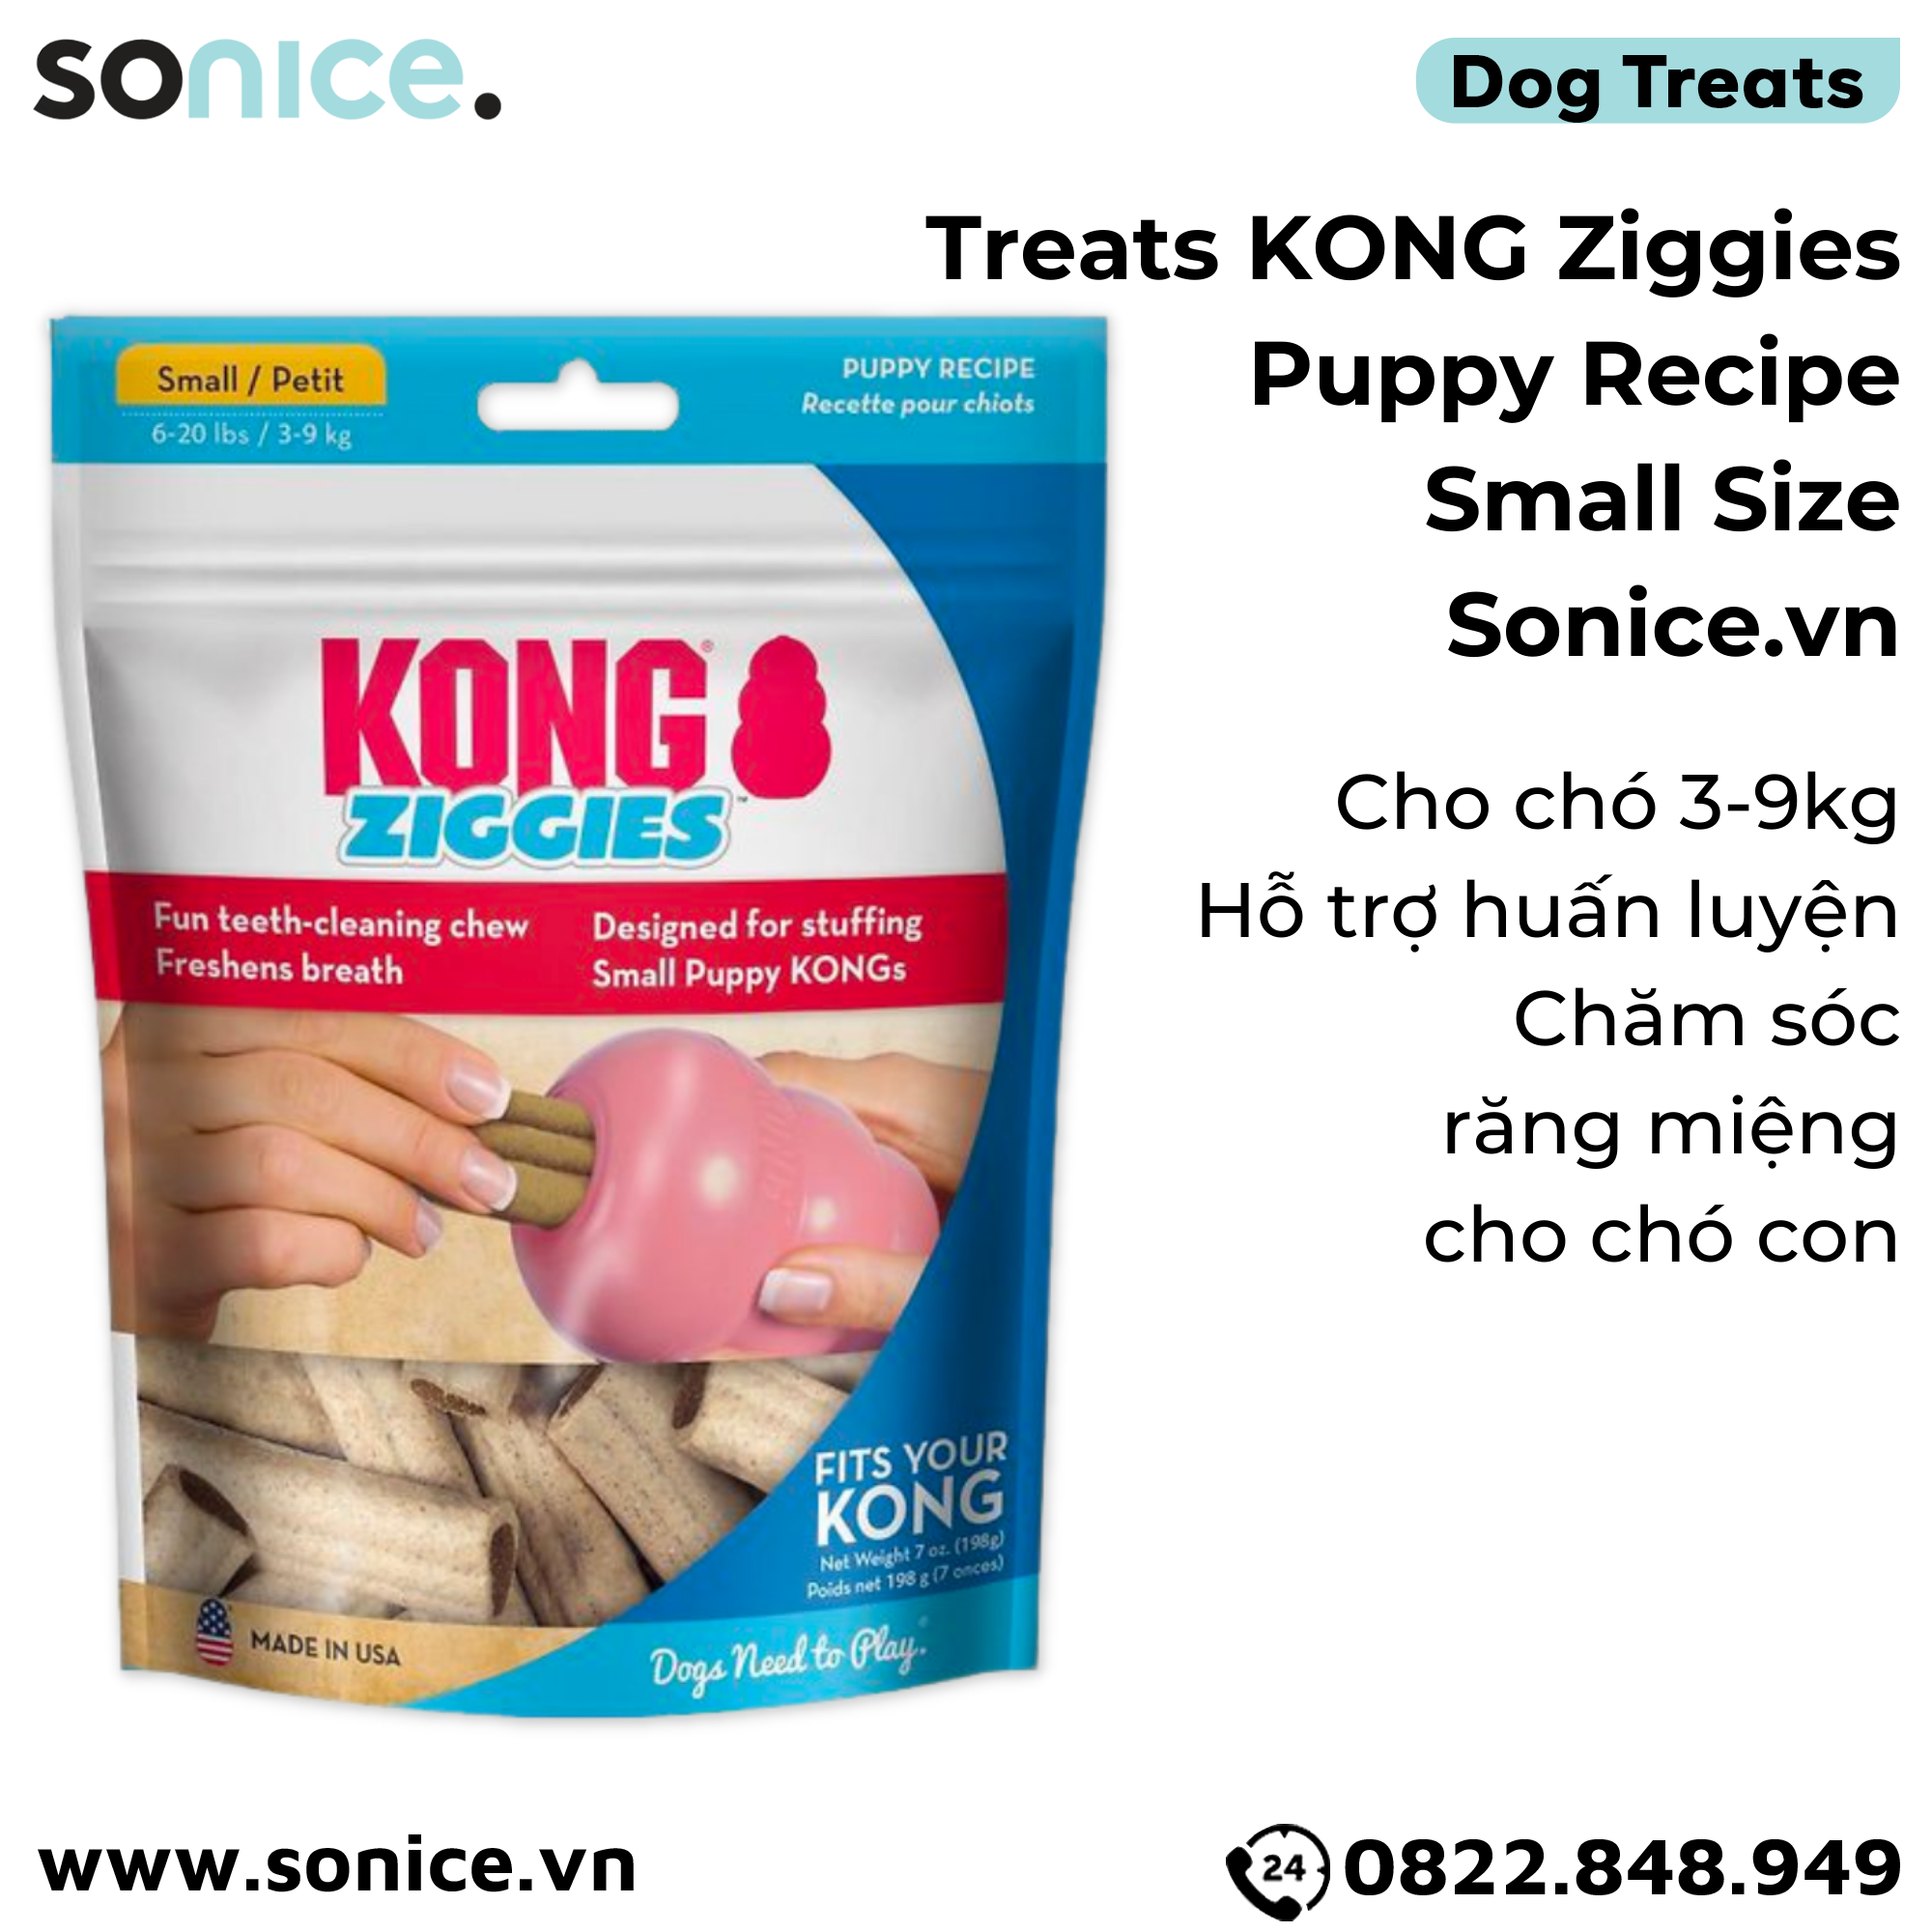  Treats Kong Ziggies Puppy Recipe Small Size 198g - Cho chó 3-9kg, hỗ trợ huấn luyện, chăm sóc răng miệng cho chó con SONICE. 